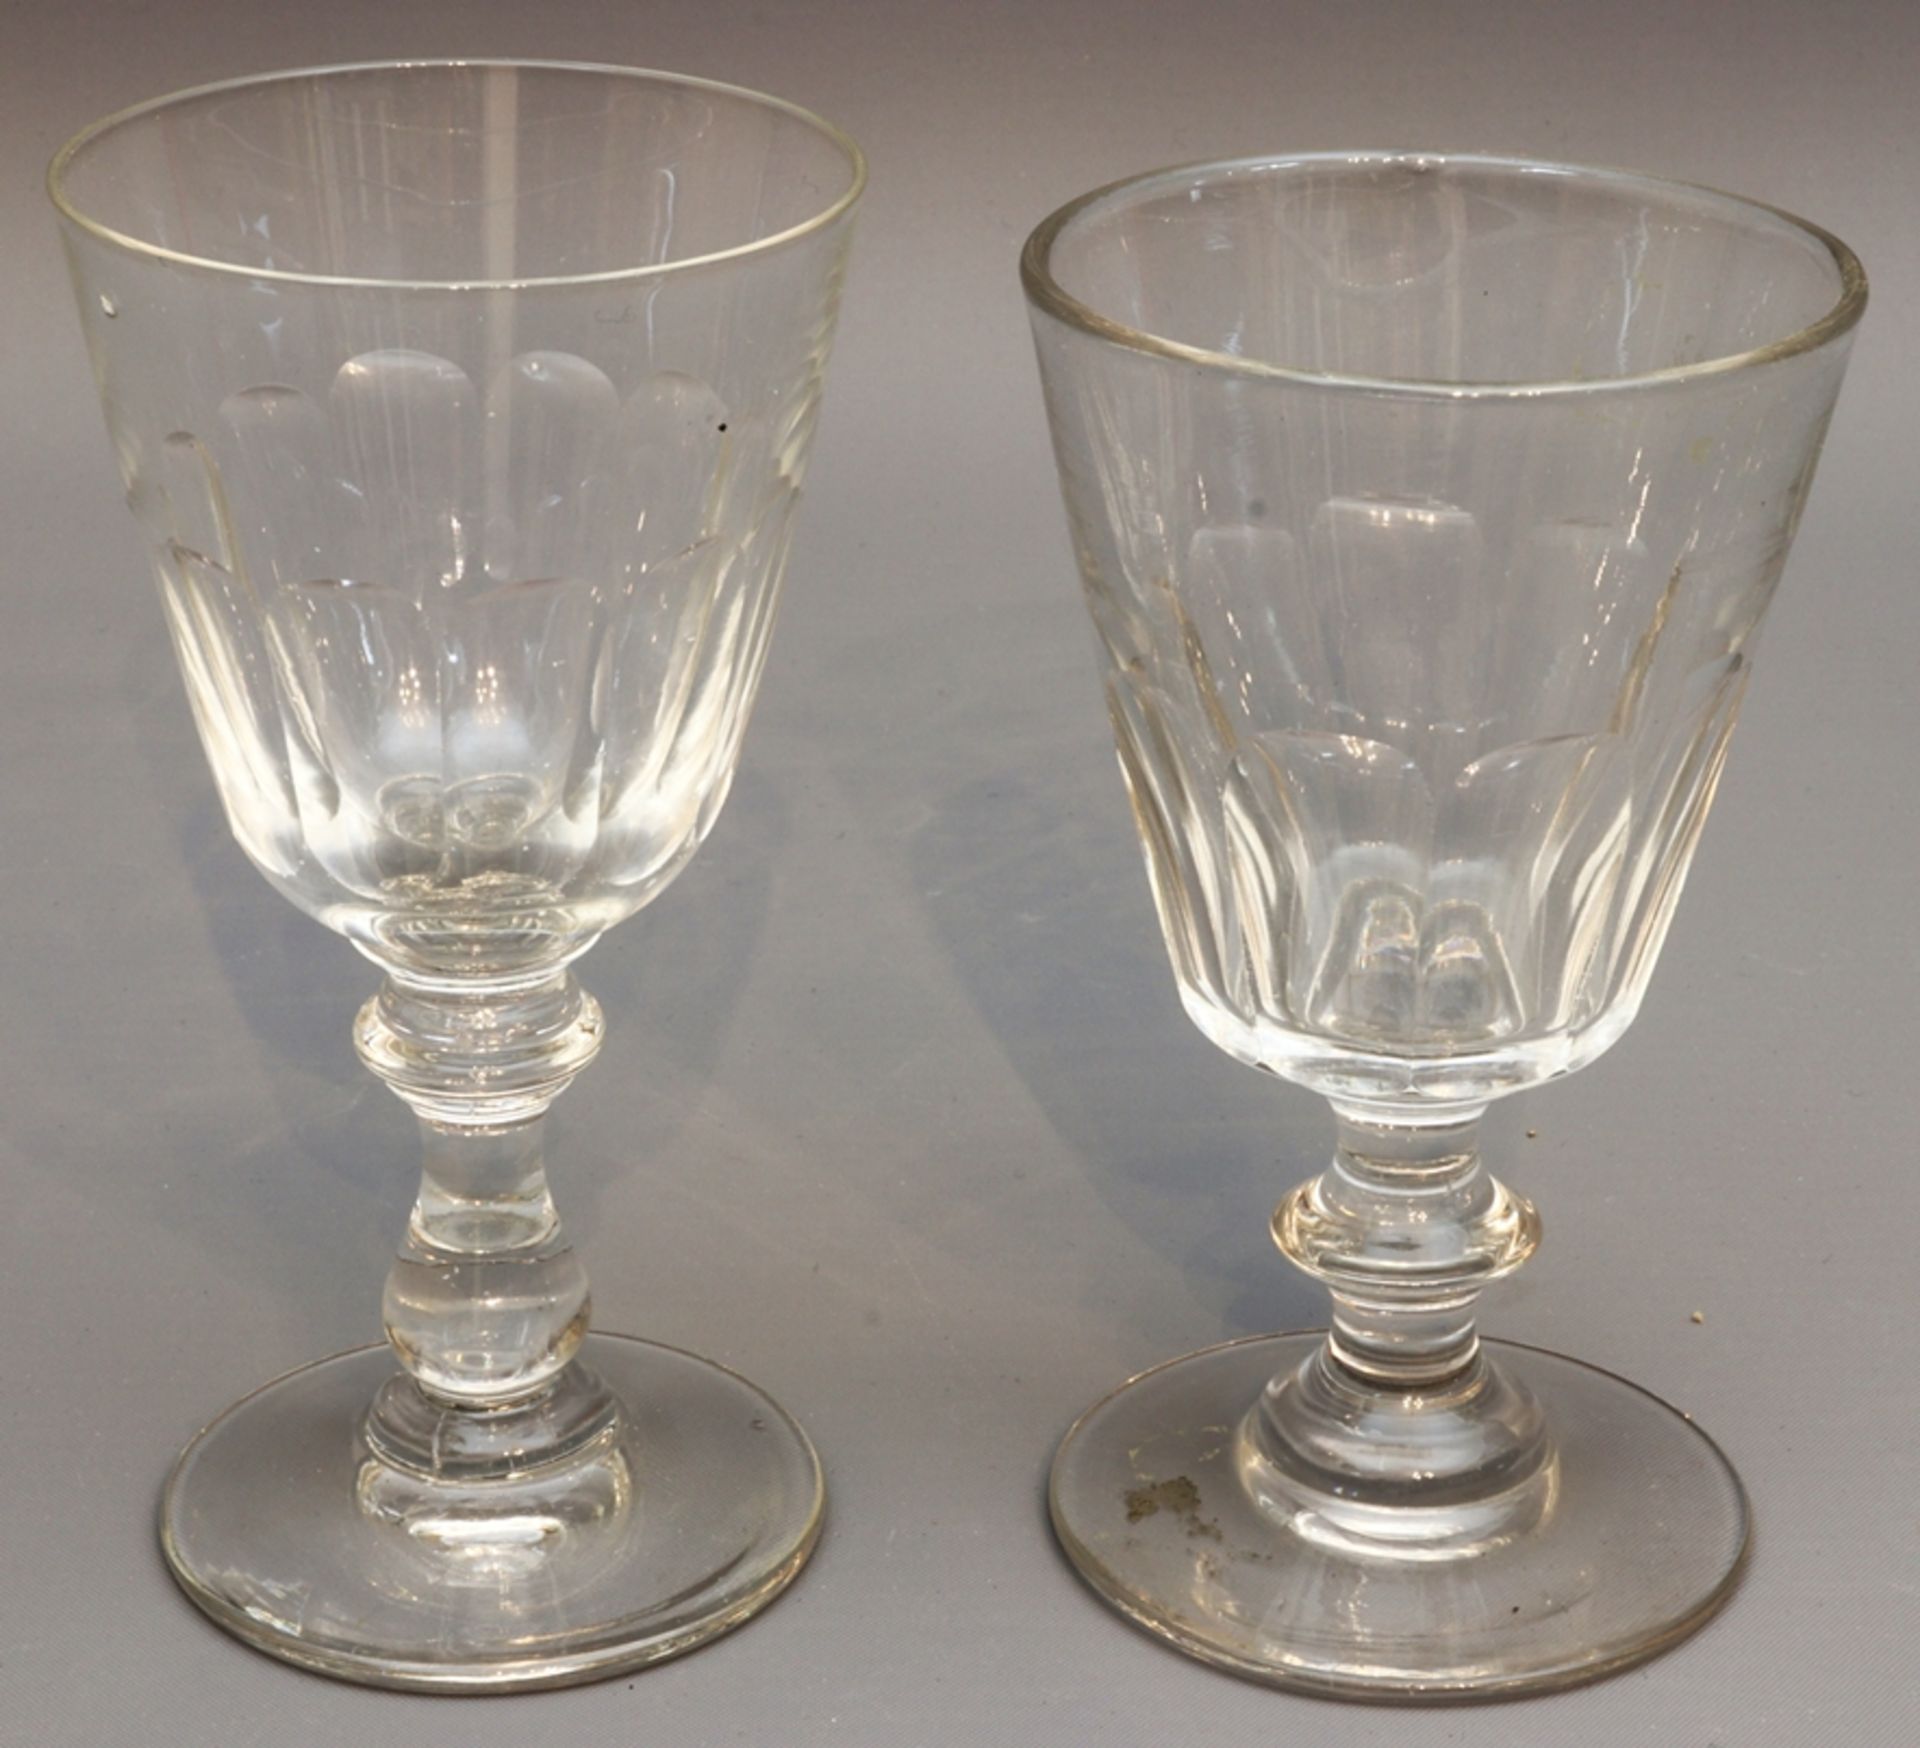 Six Biedermeier sweet wine glasses circa 1840-1860, German - Image 2 of 2